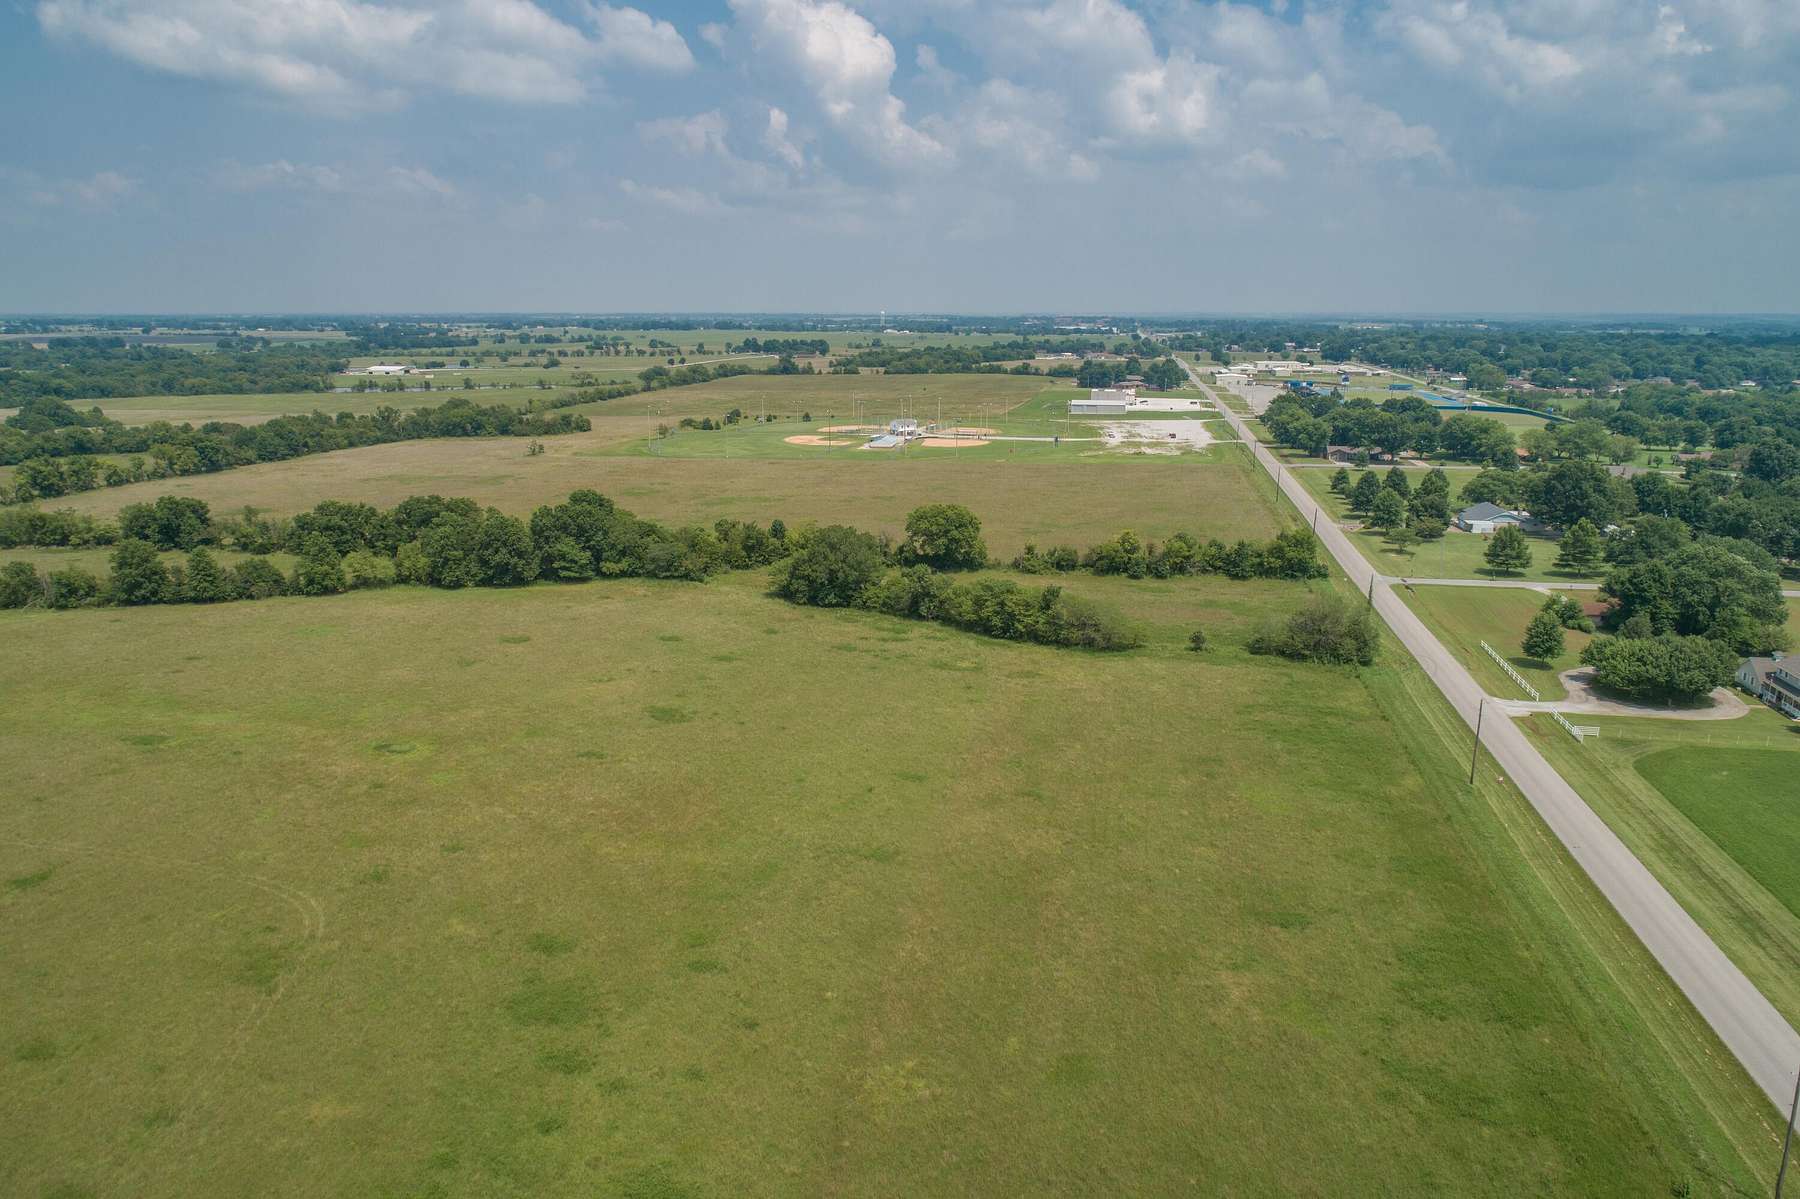 70 Acres of Land for Sale in Vinita, Oklahoma